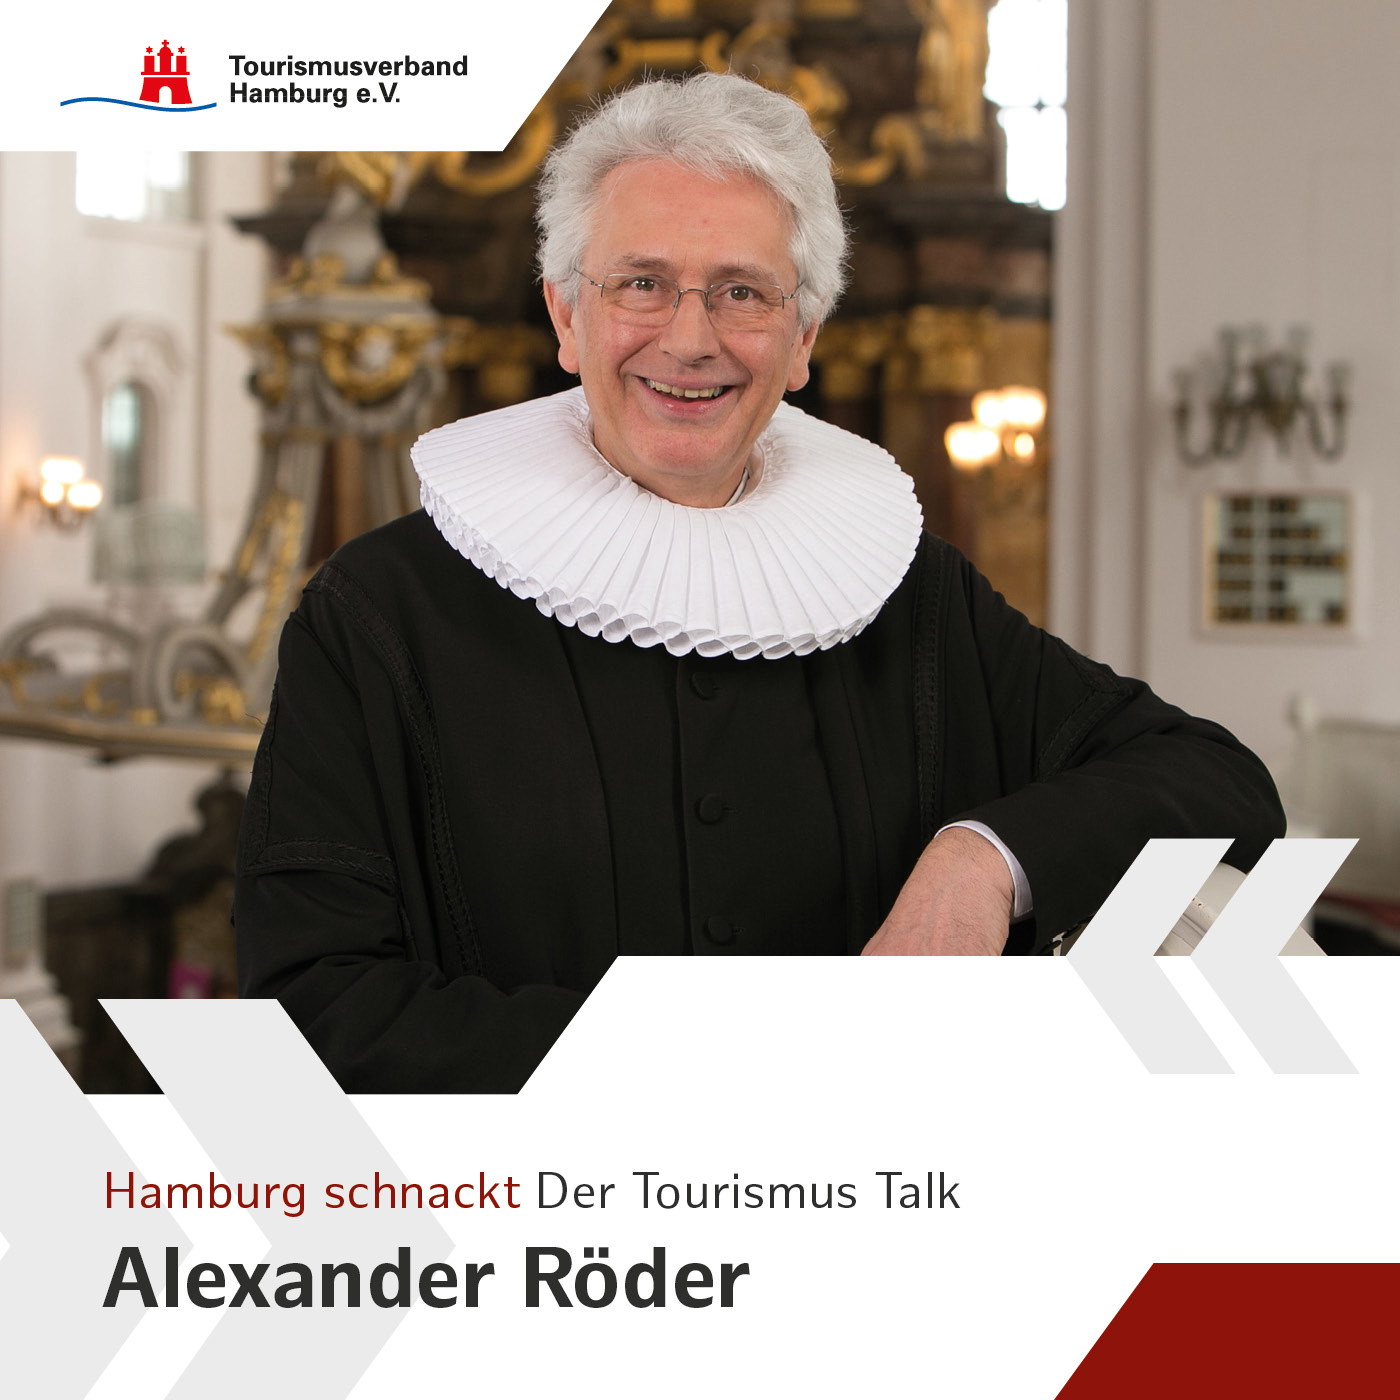 Hamburg schnackt mit Alexander Röder